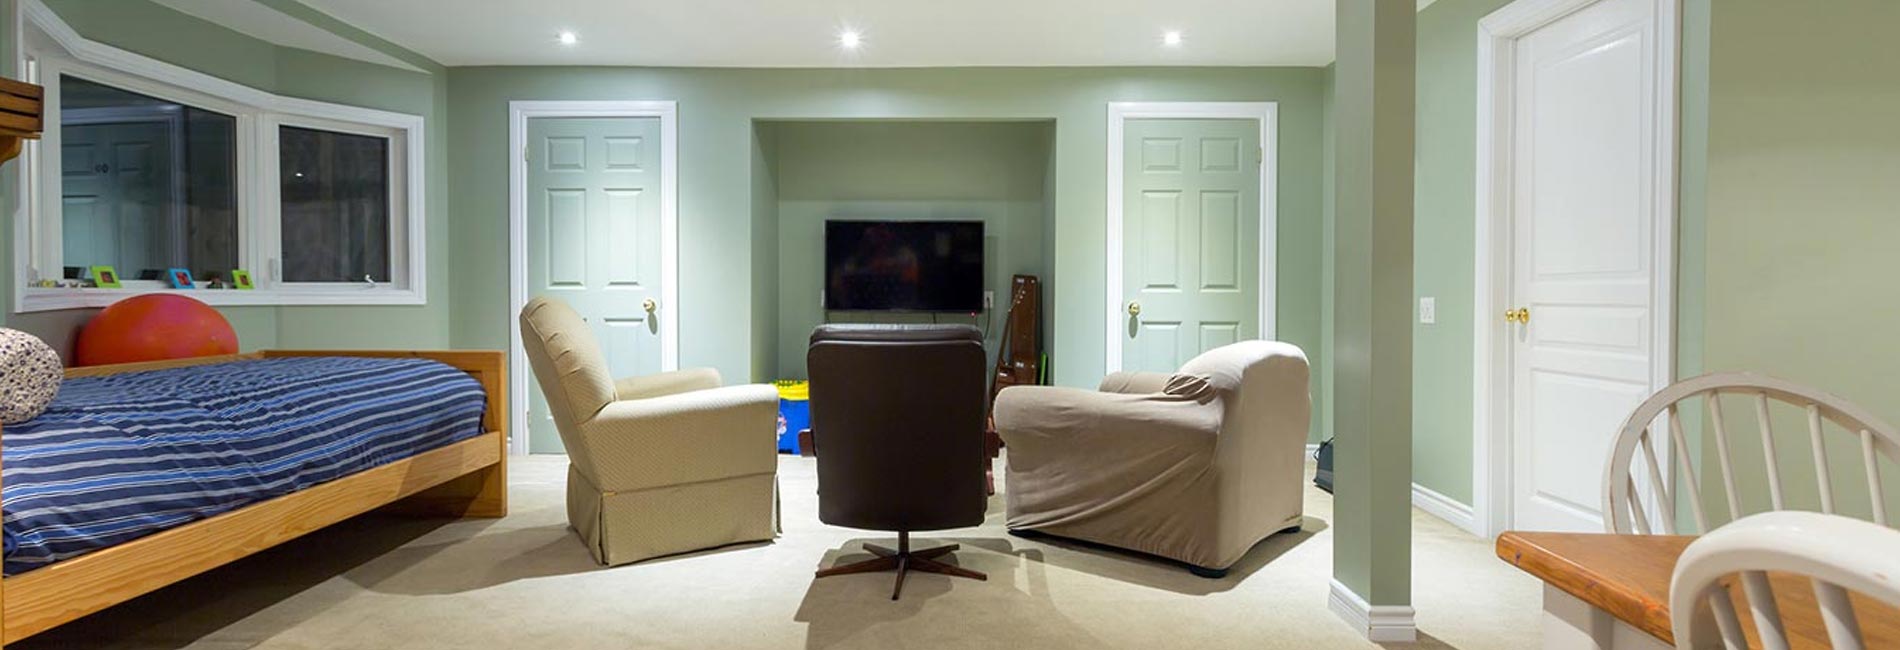 Convert Concrete Subfloor To Living Room